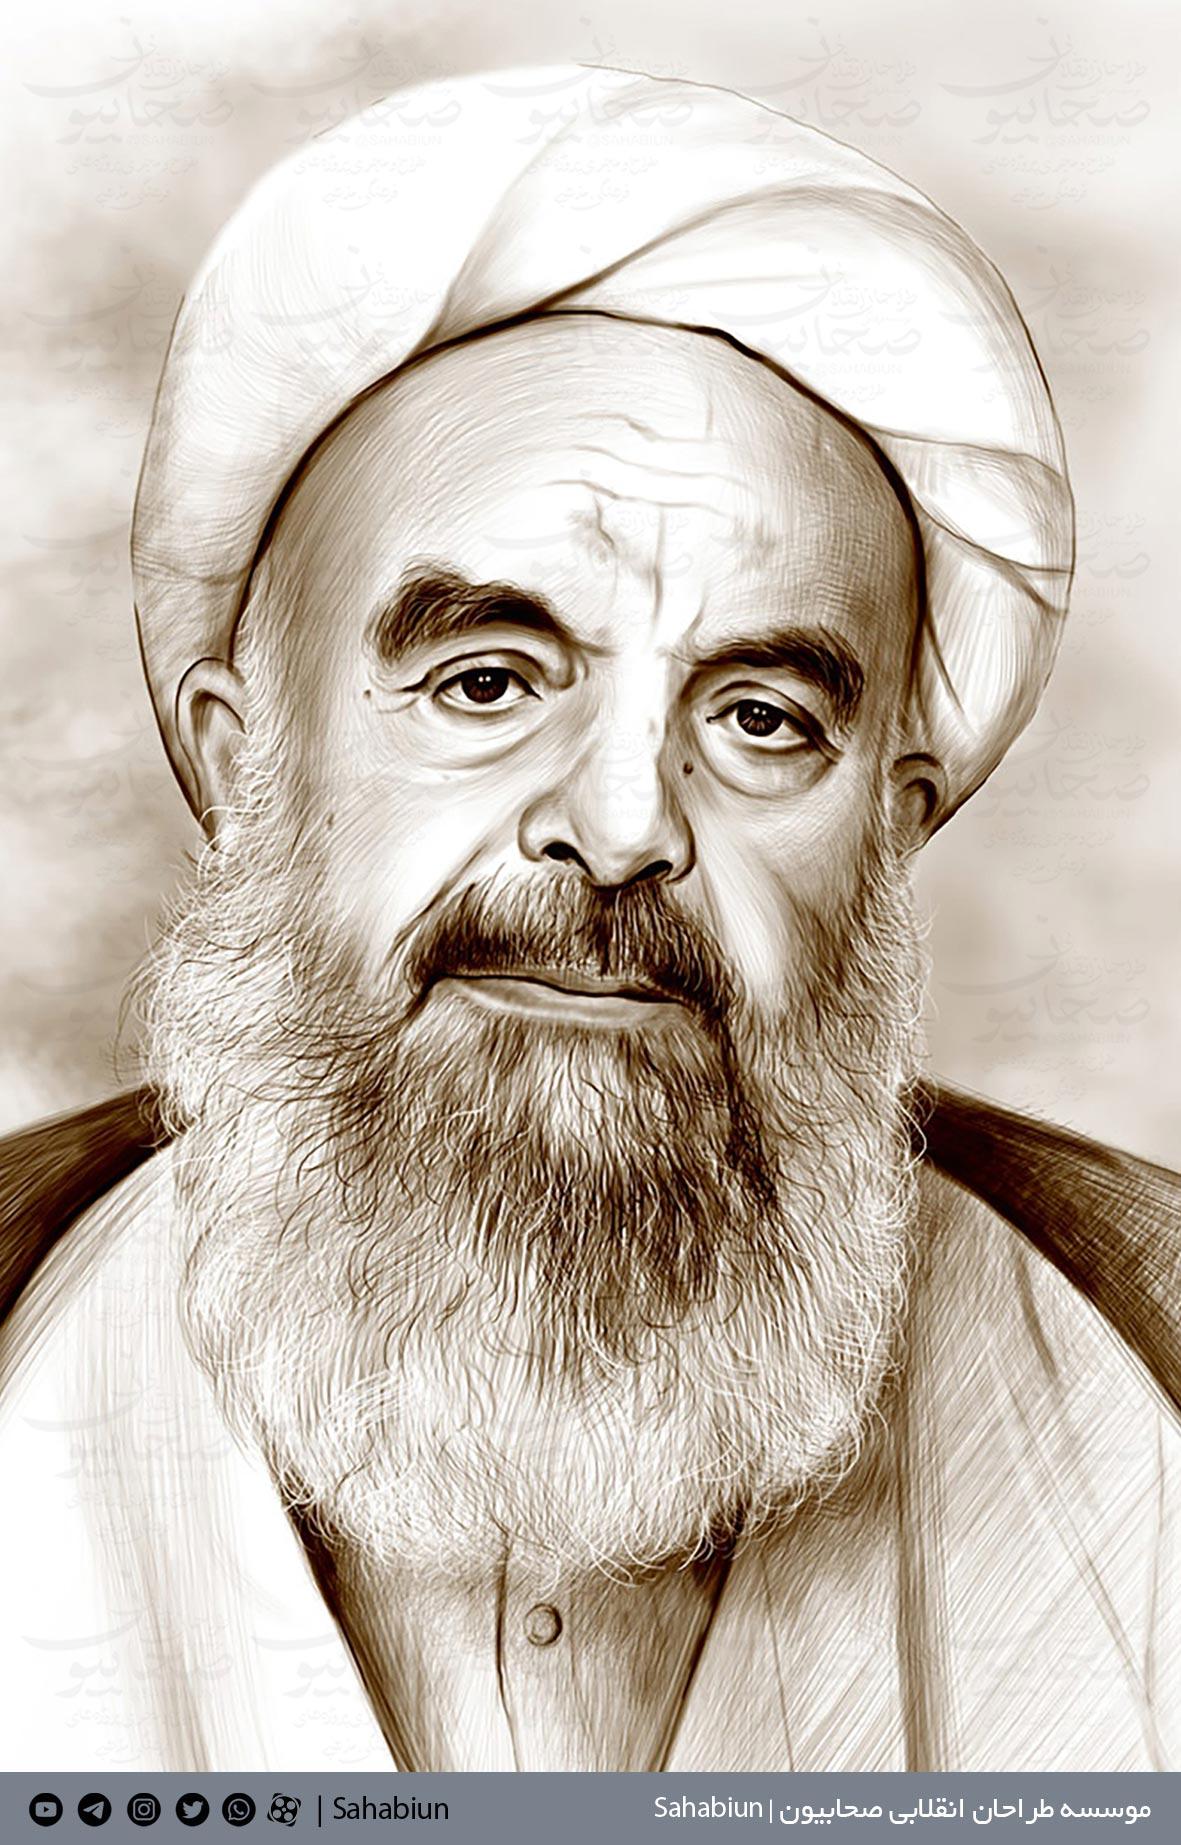 قاب عکس با کیفیت تصویر شهید آیت الله محمد صدوقی در نقشه ایران